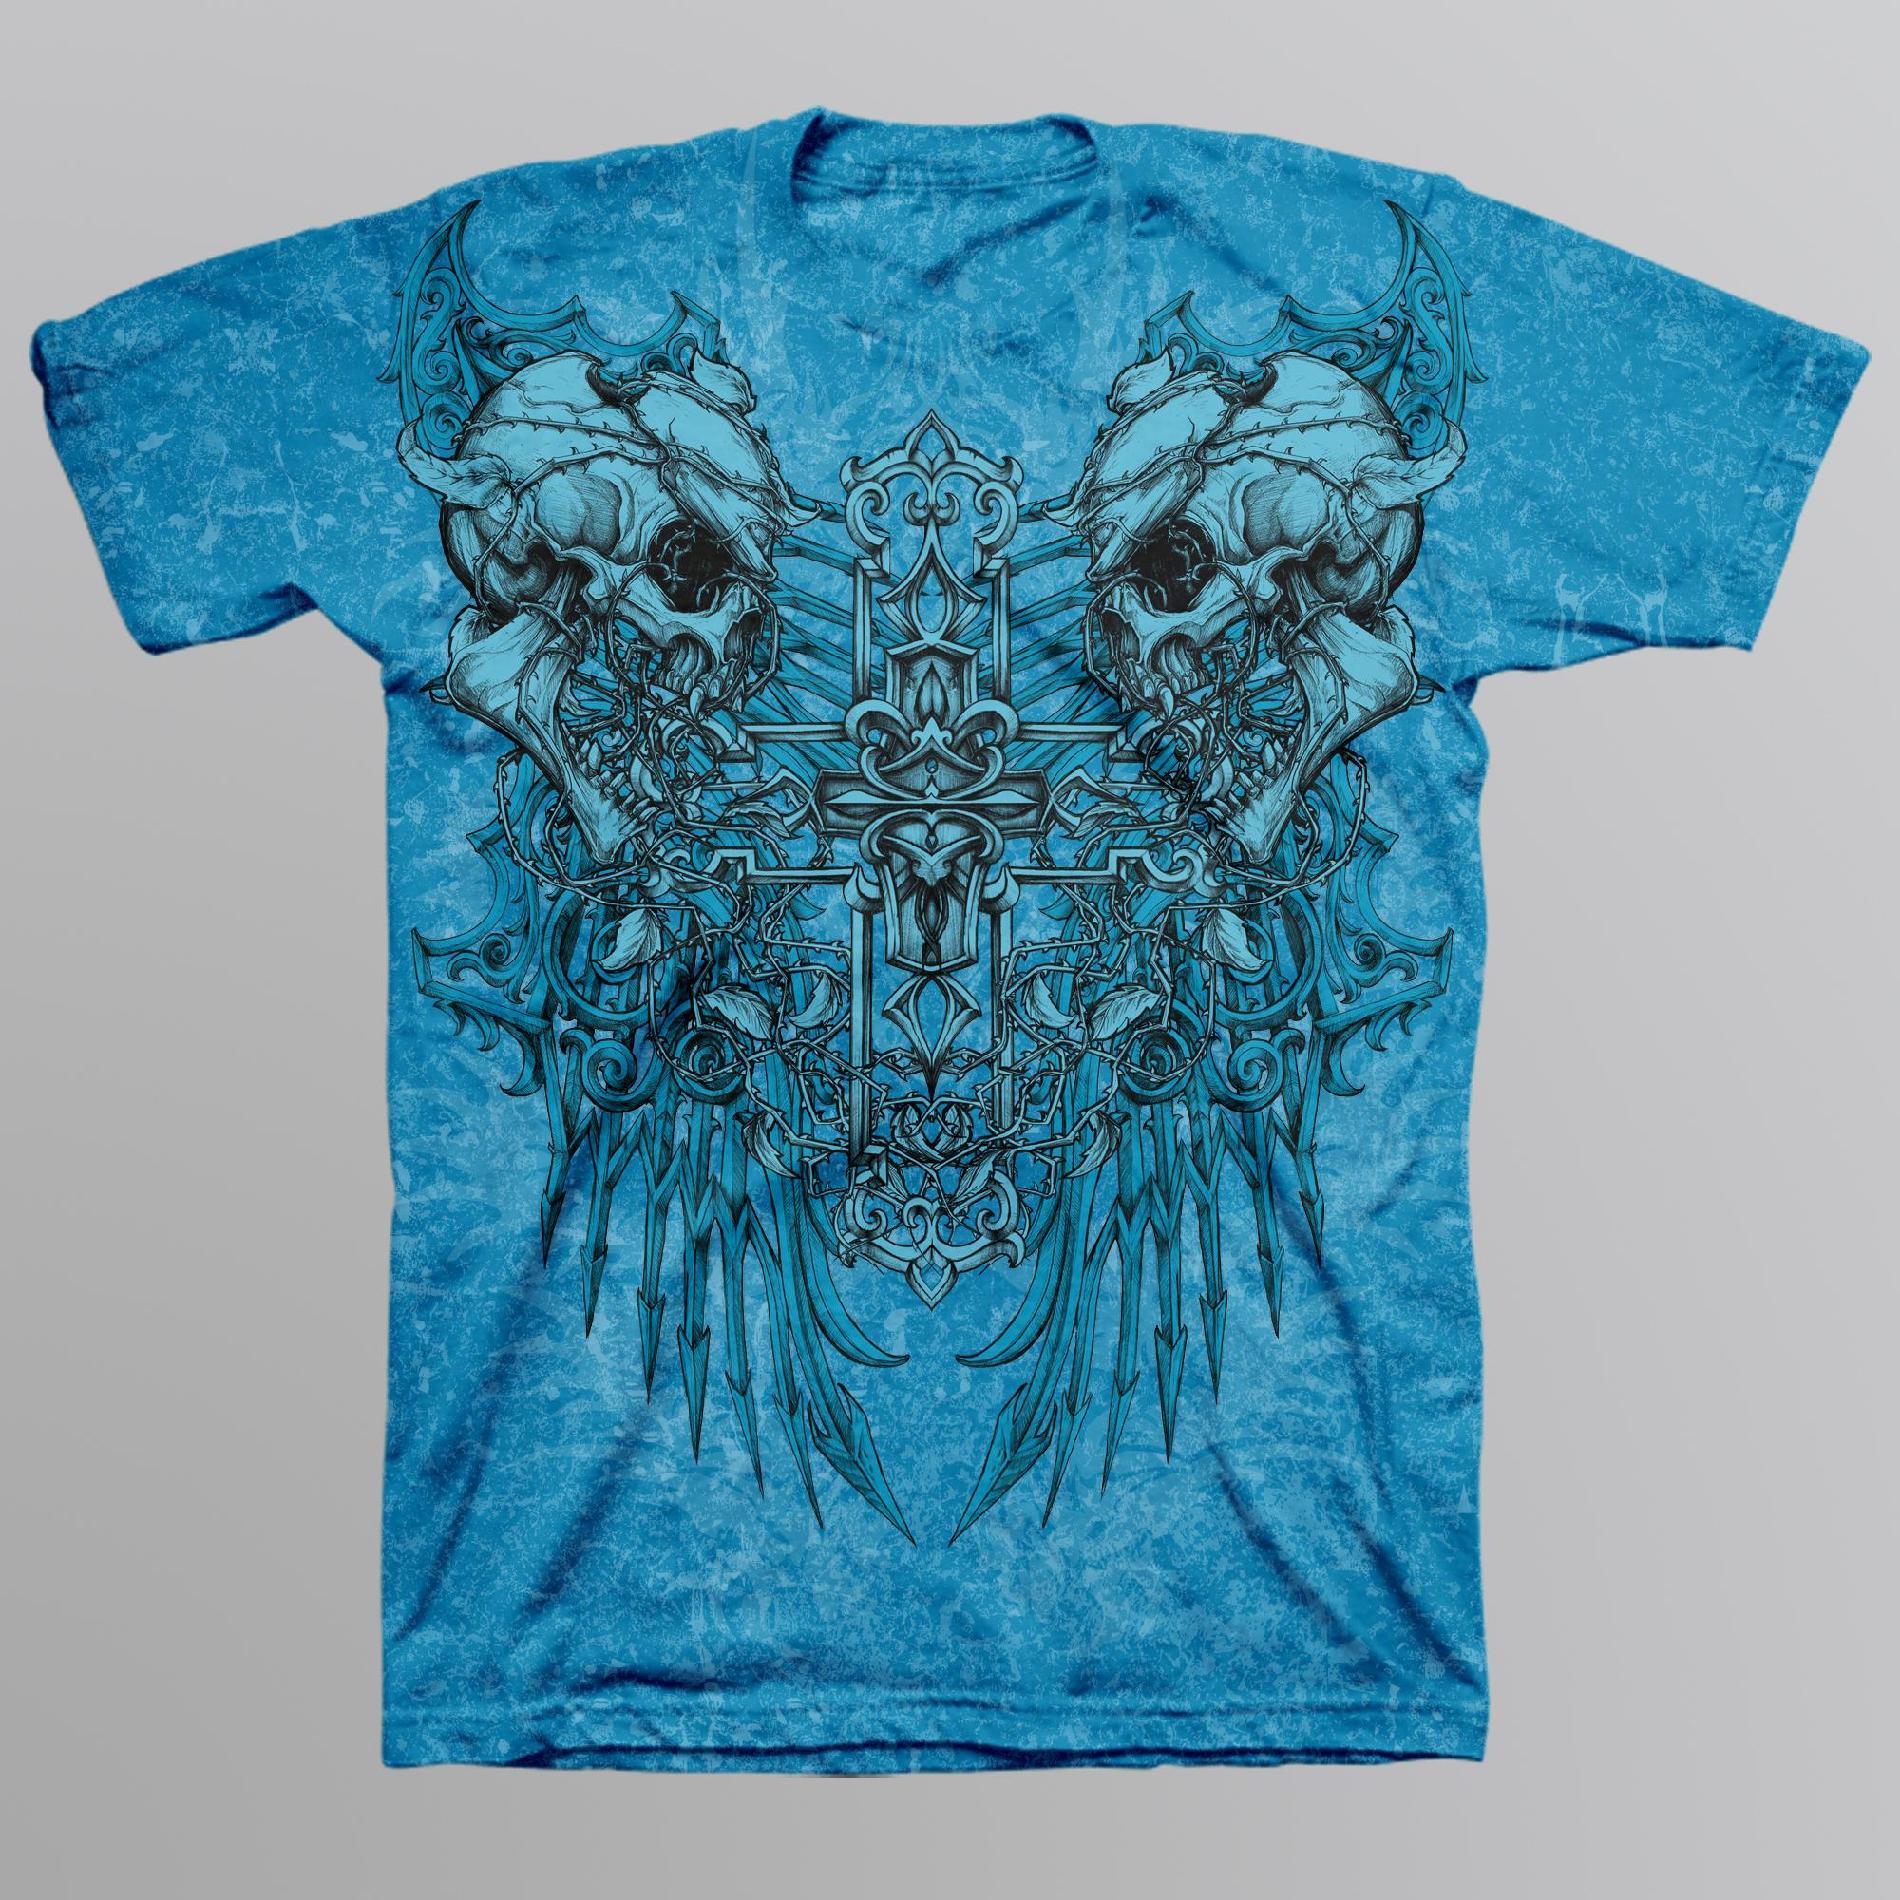 Sinister Men's Graphic T-Shirt - Demon Skulls